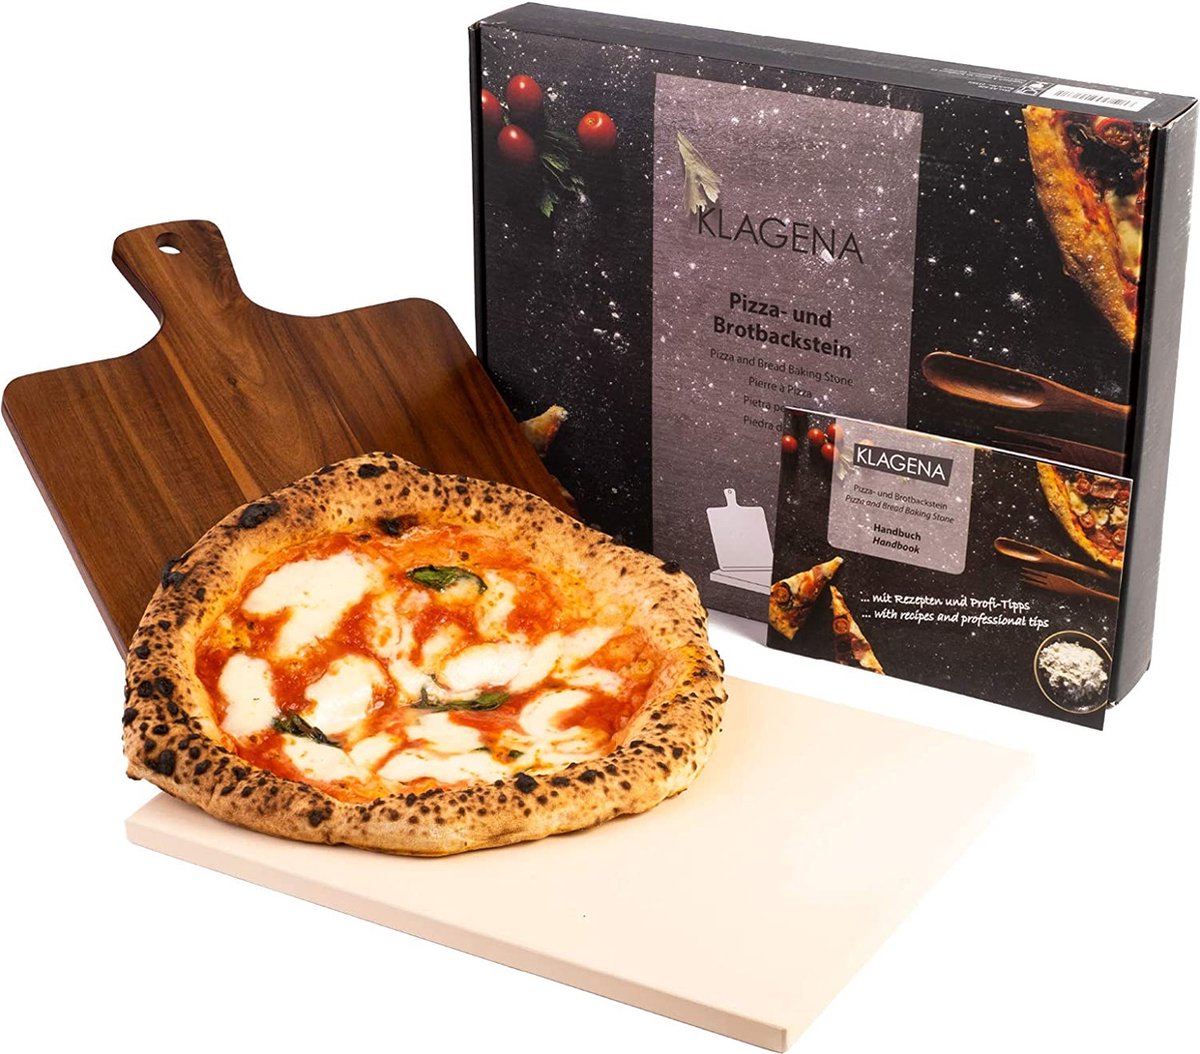 Gourmeo Pizzasteenset met bamboe schep, 38 x 30 cm vierkant, cordierite pizzasteen voor oven, gasgrill en grill, gelijkmatige warmteverdeling en eenvoudige reiniging